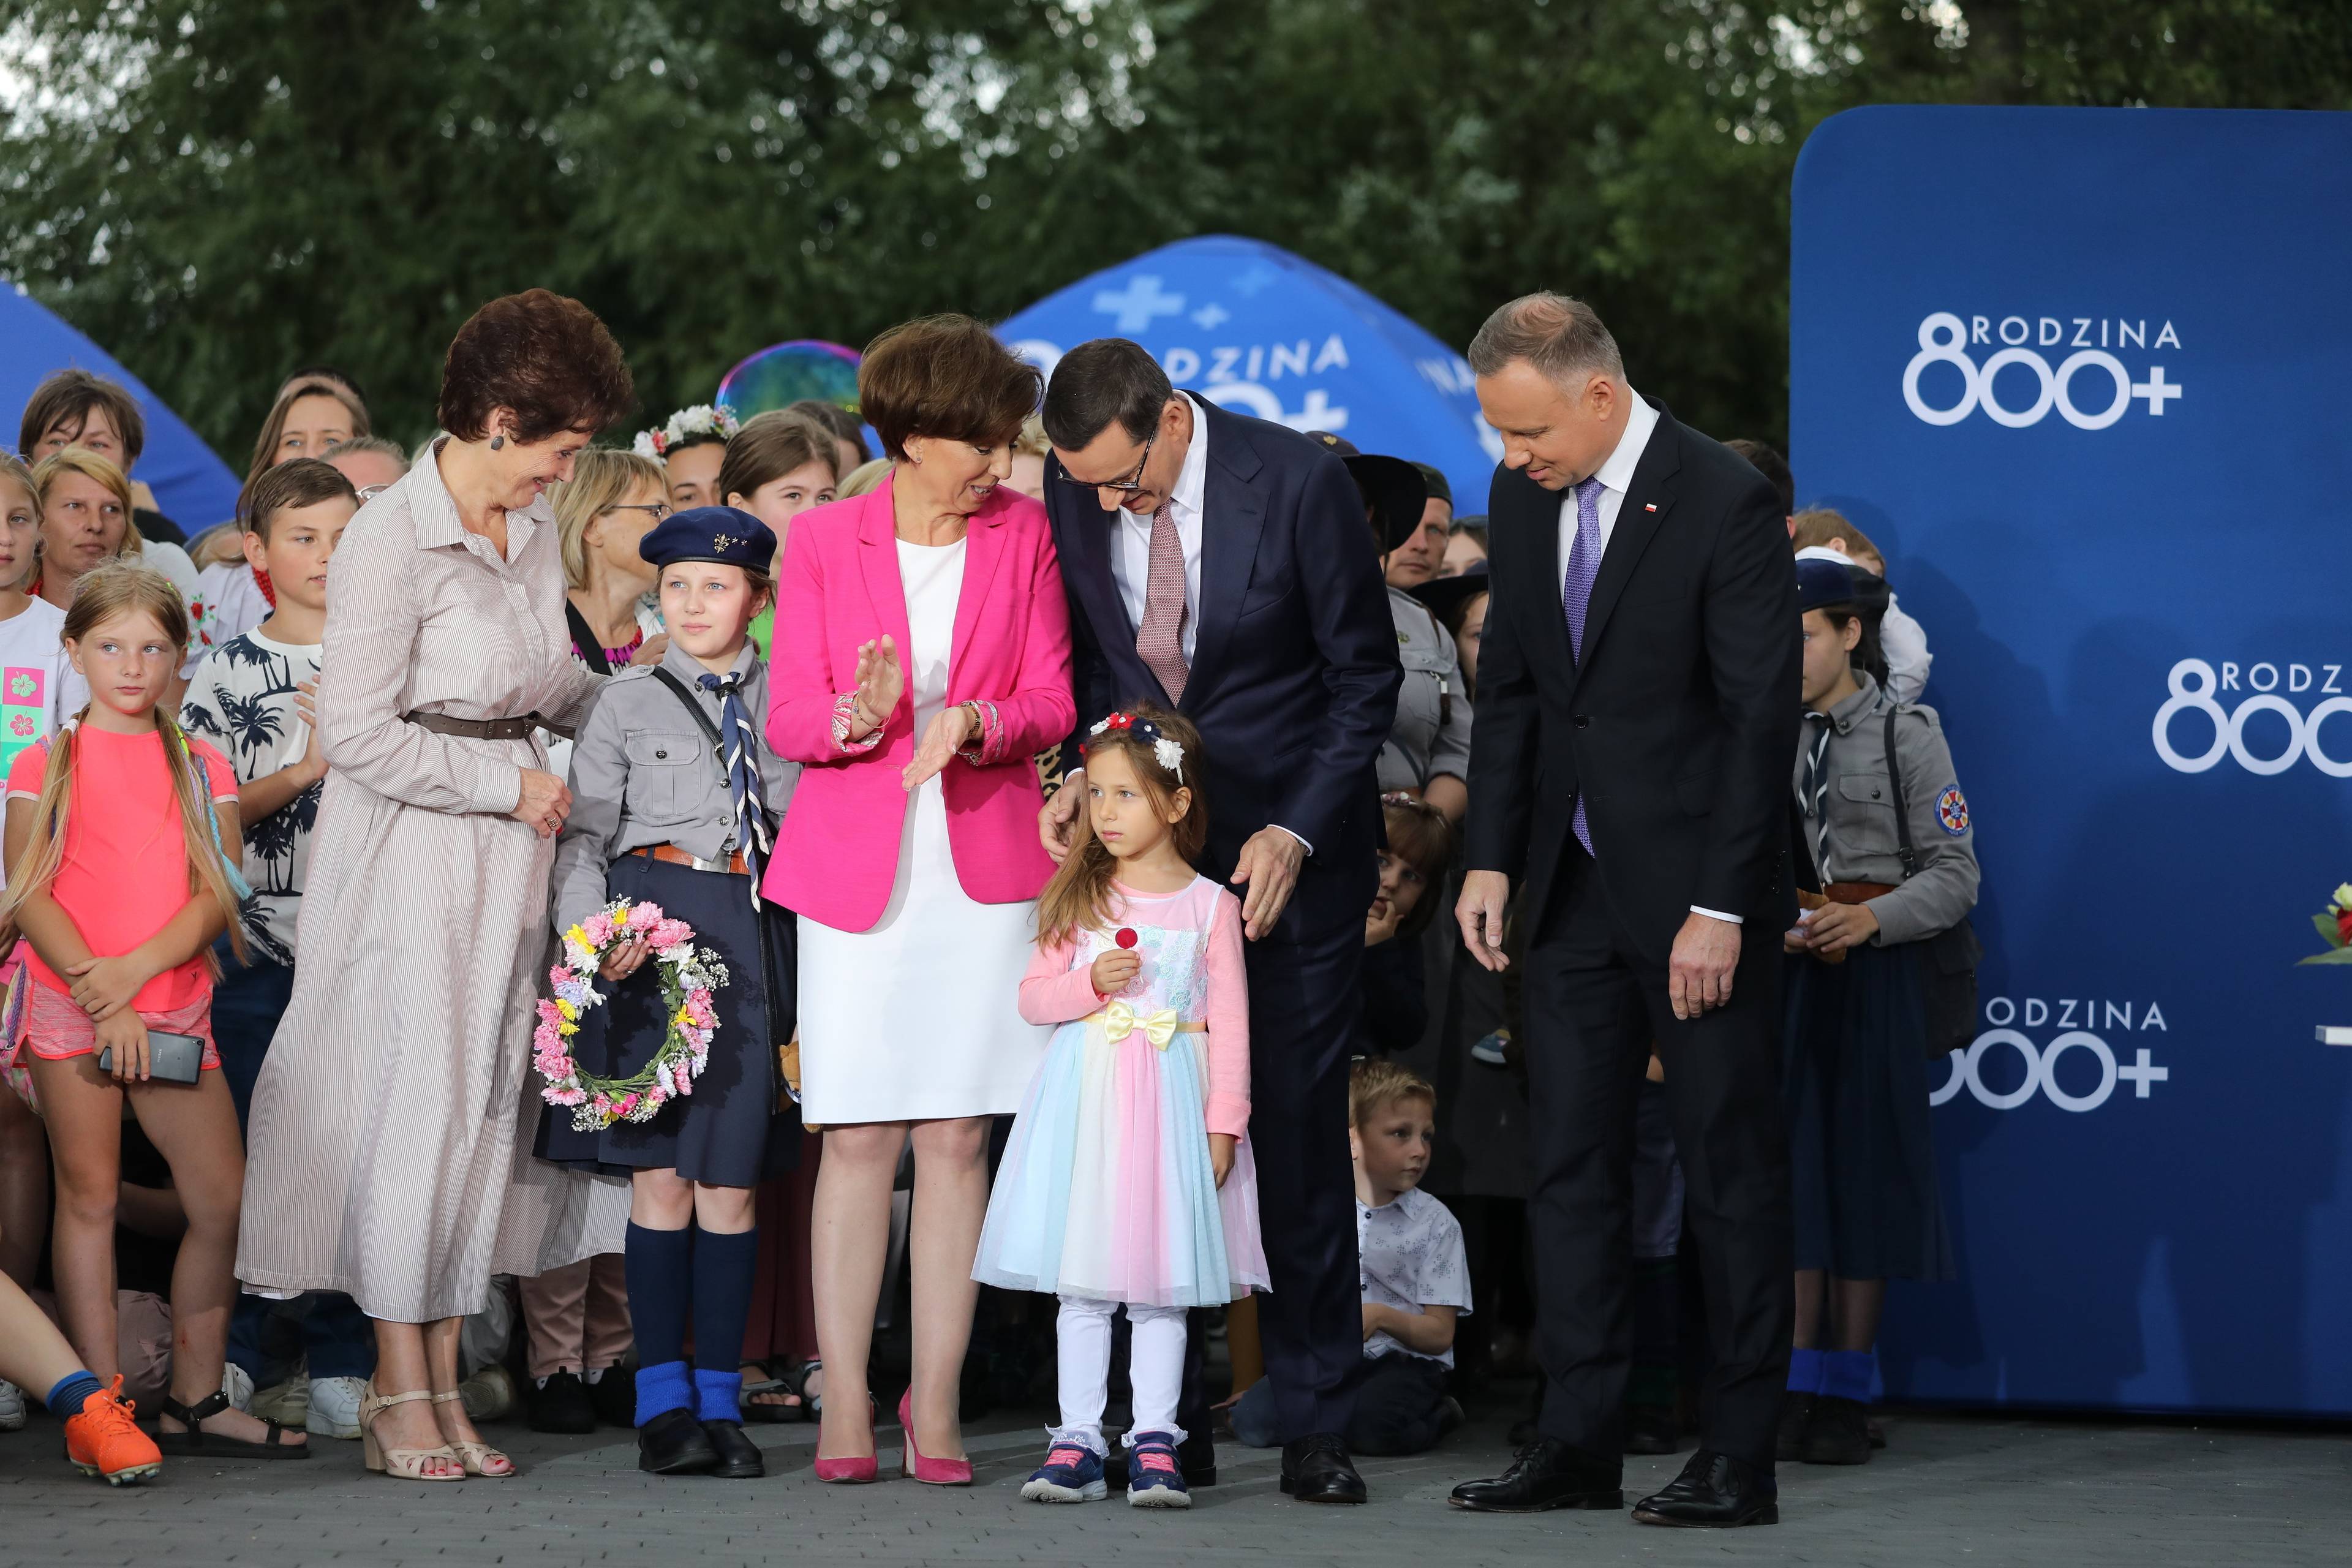 Grupa ludzi na scenie z małą dziewczynką" Ministra Maląg nachyla się do premiera Morawieckiego, na co patrzy prezydent D